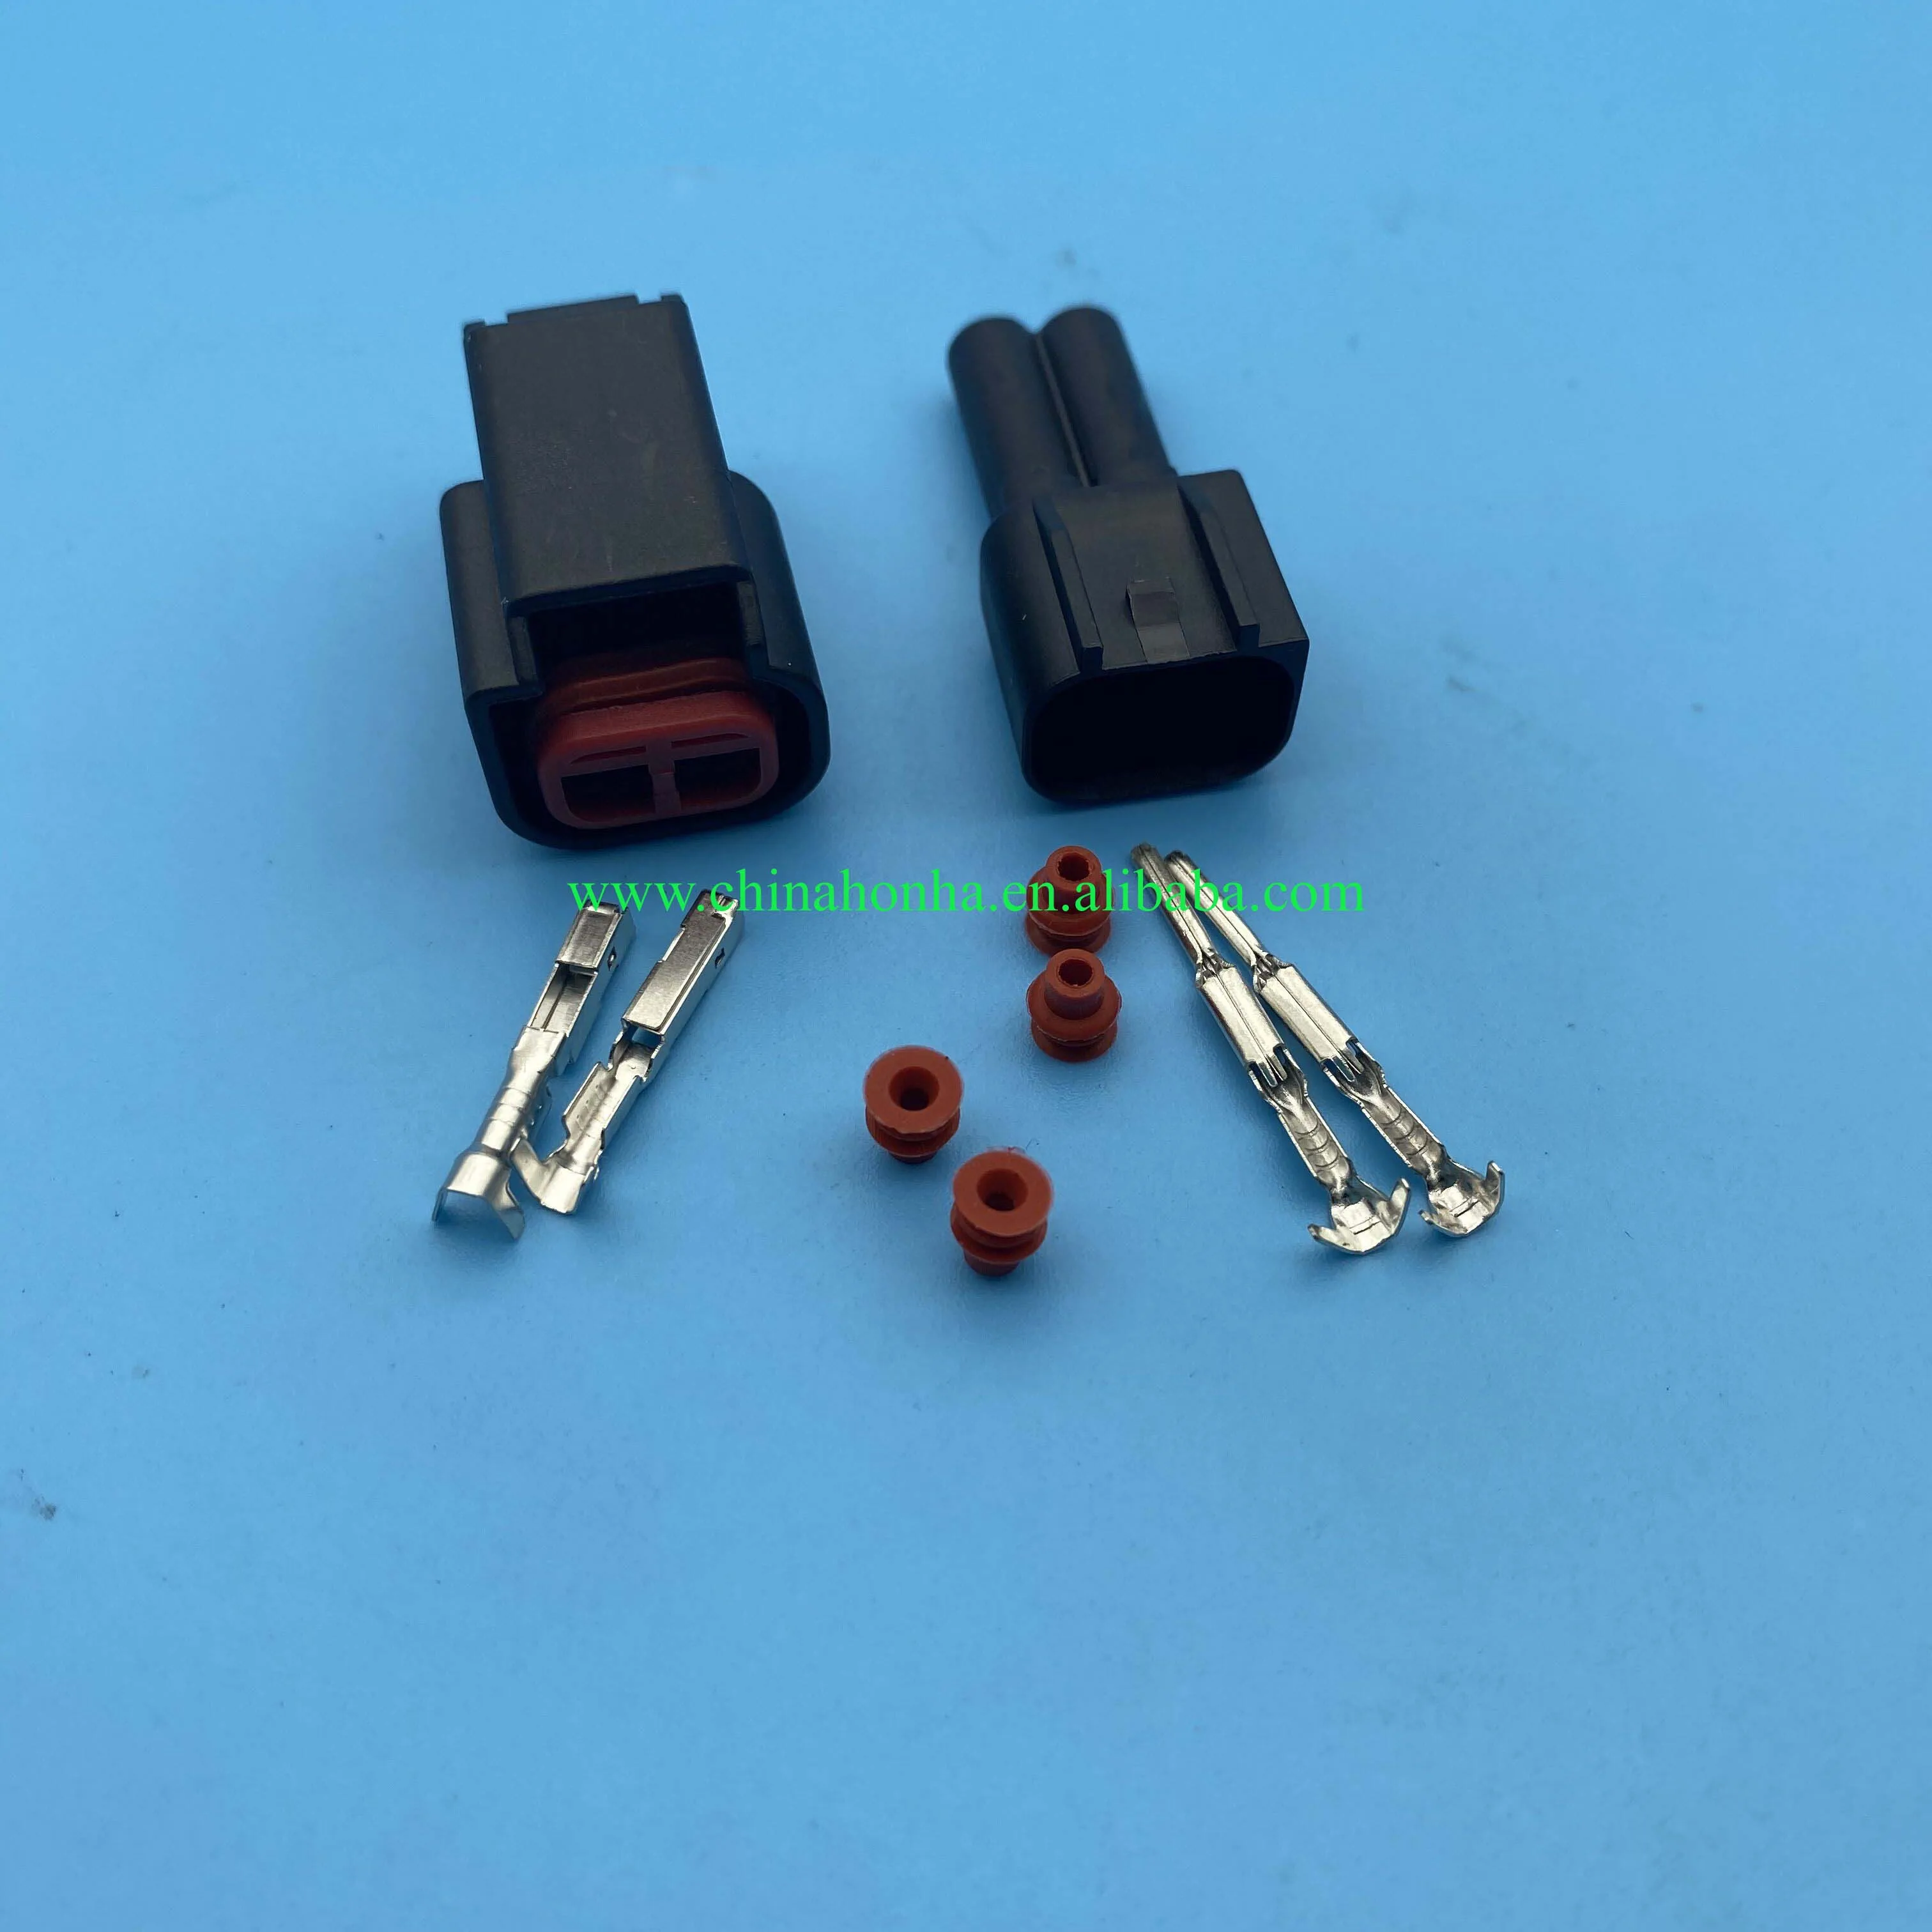 

2 pin V6 crankshaft camshaft position sensor plug high voltage ignition coil connector male female